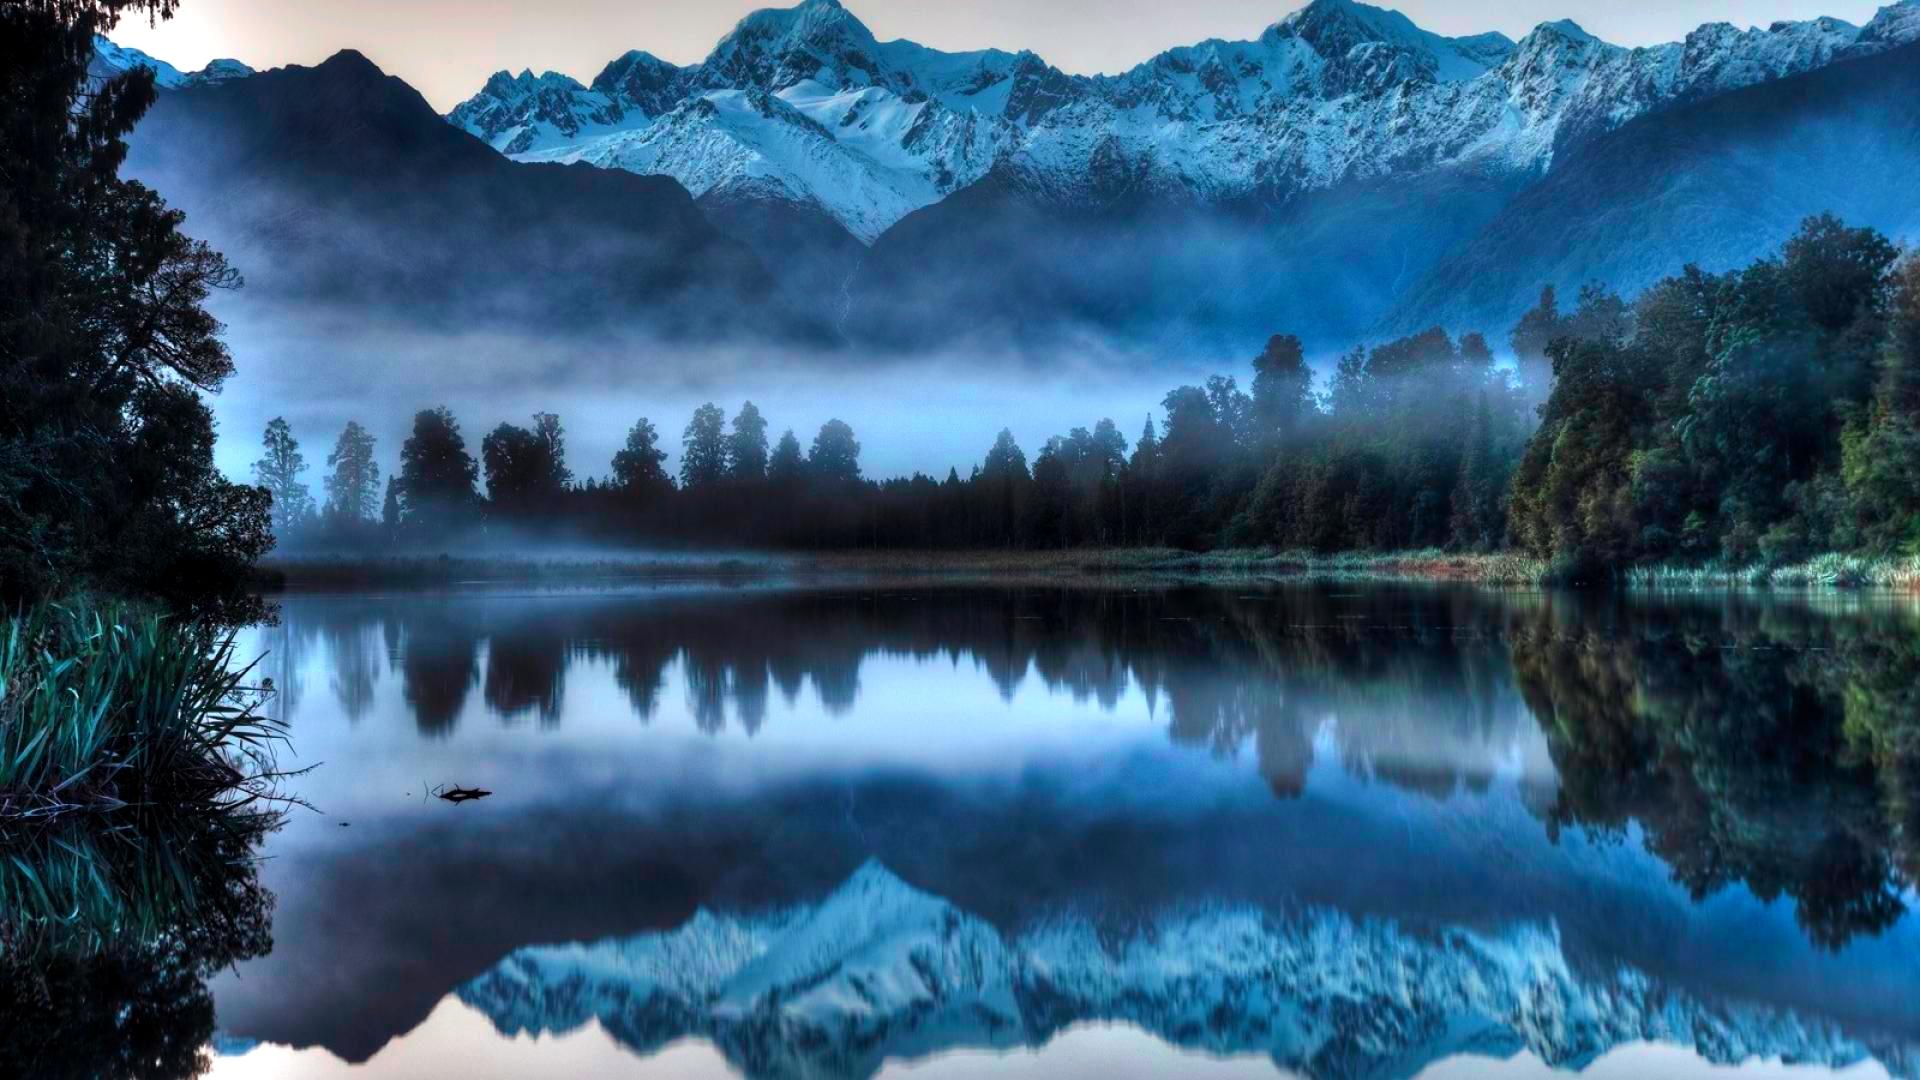 amazing reflection images